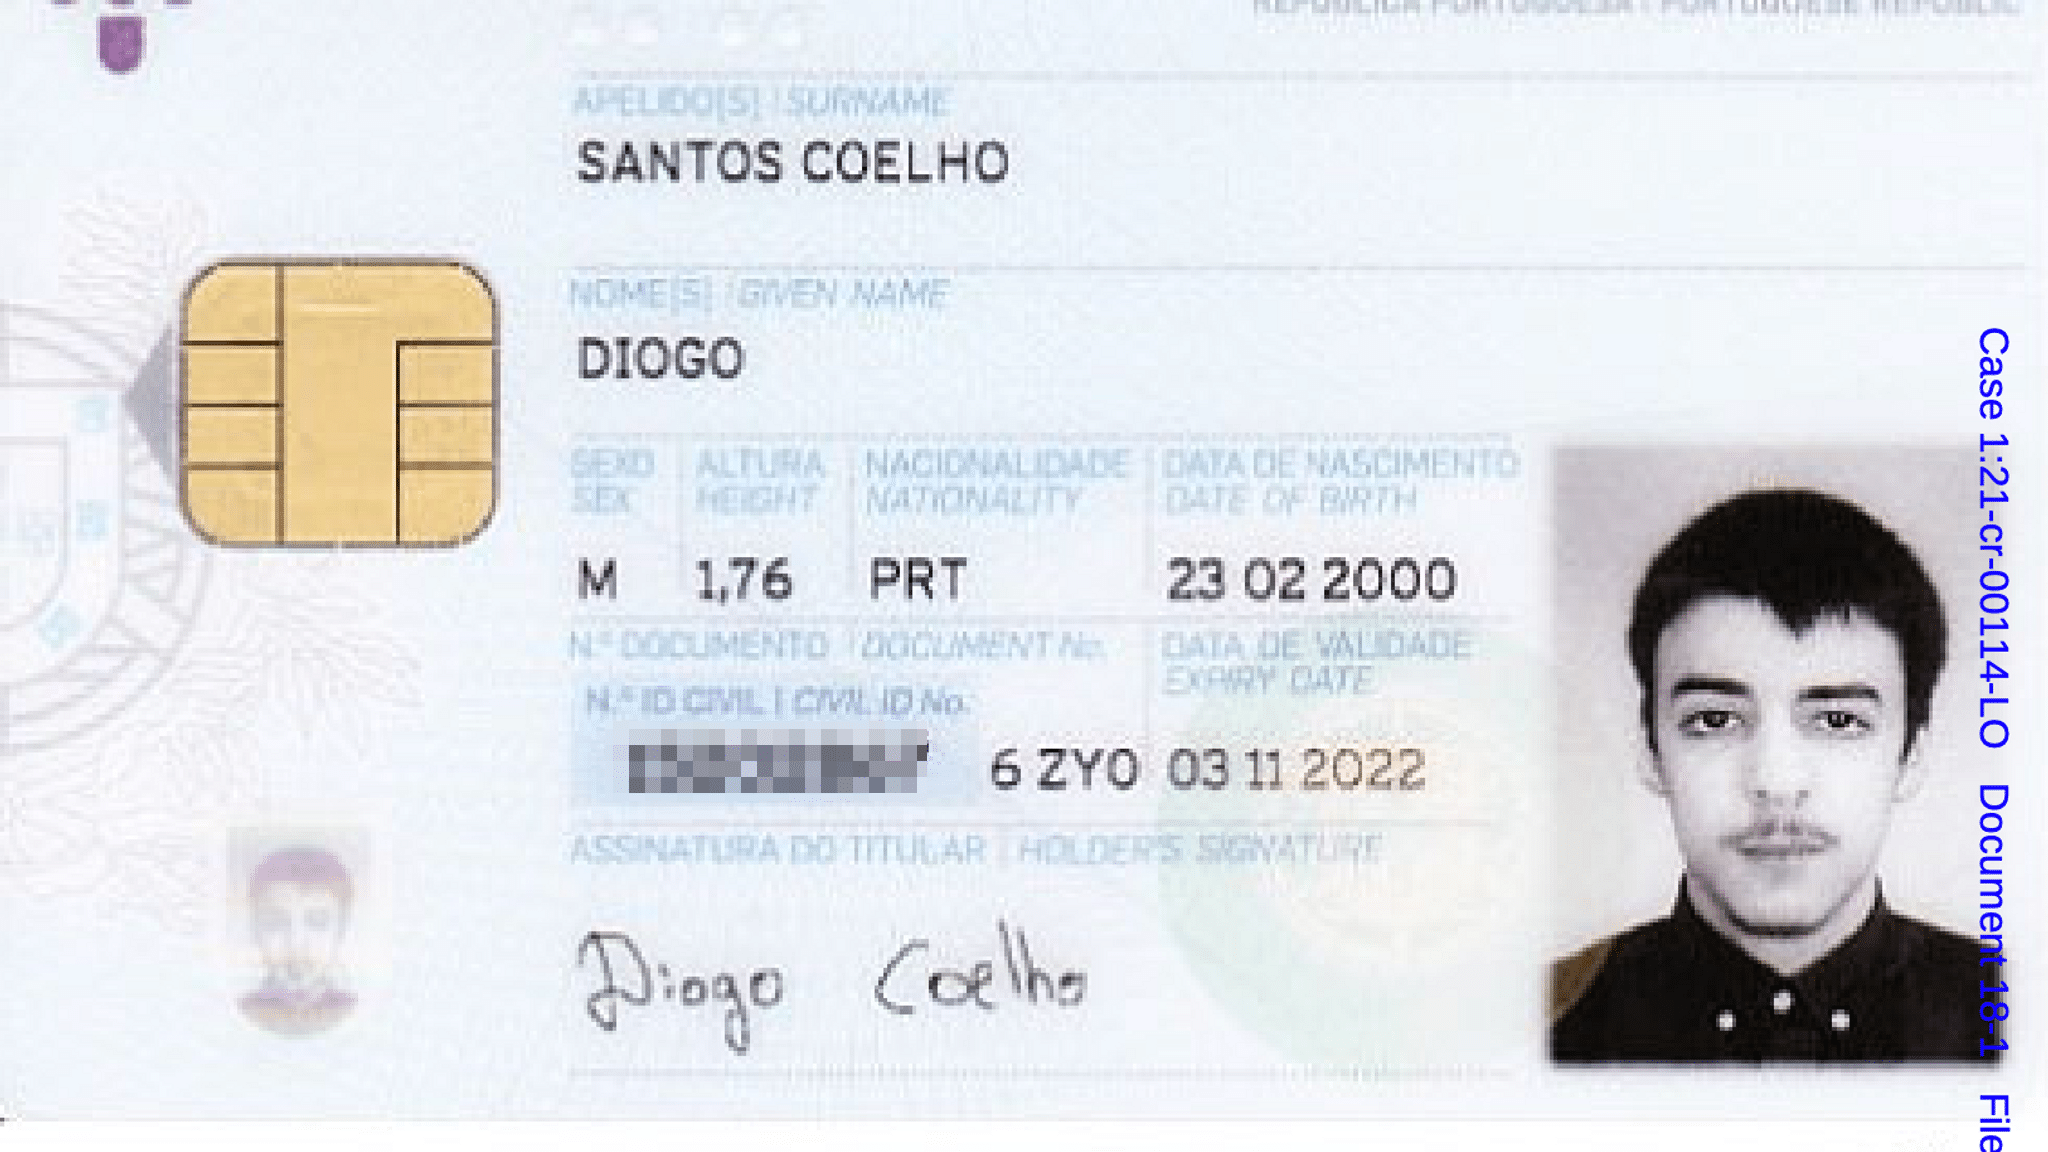 Diogo Santos Coelho ID